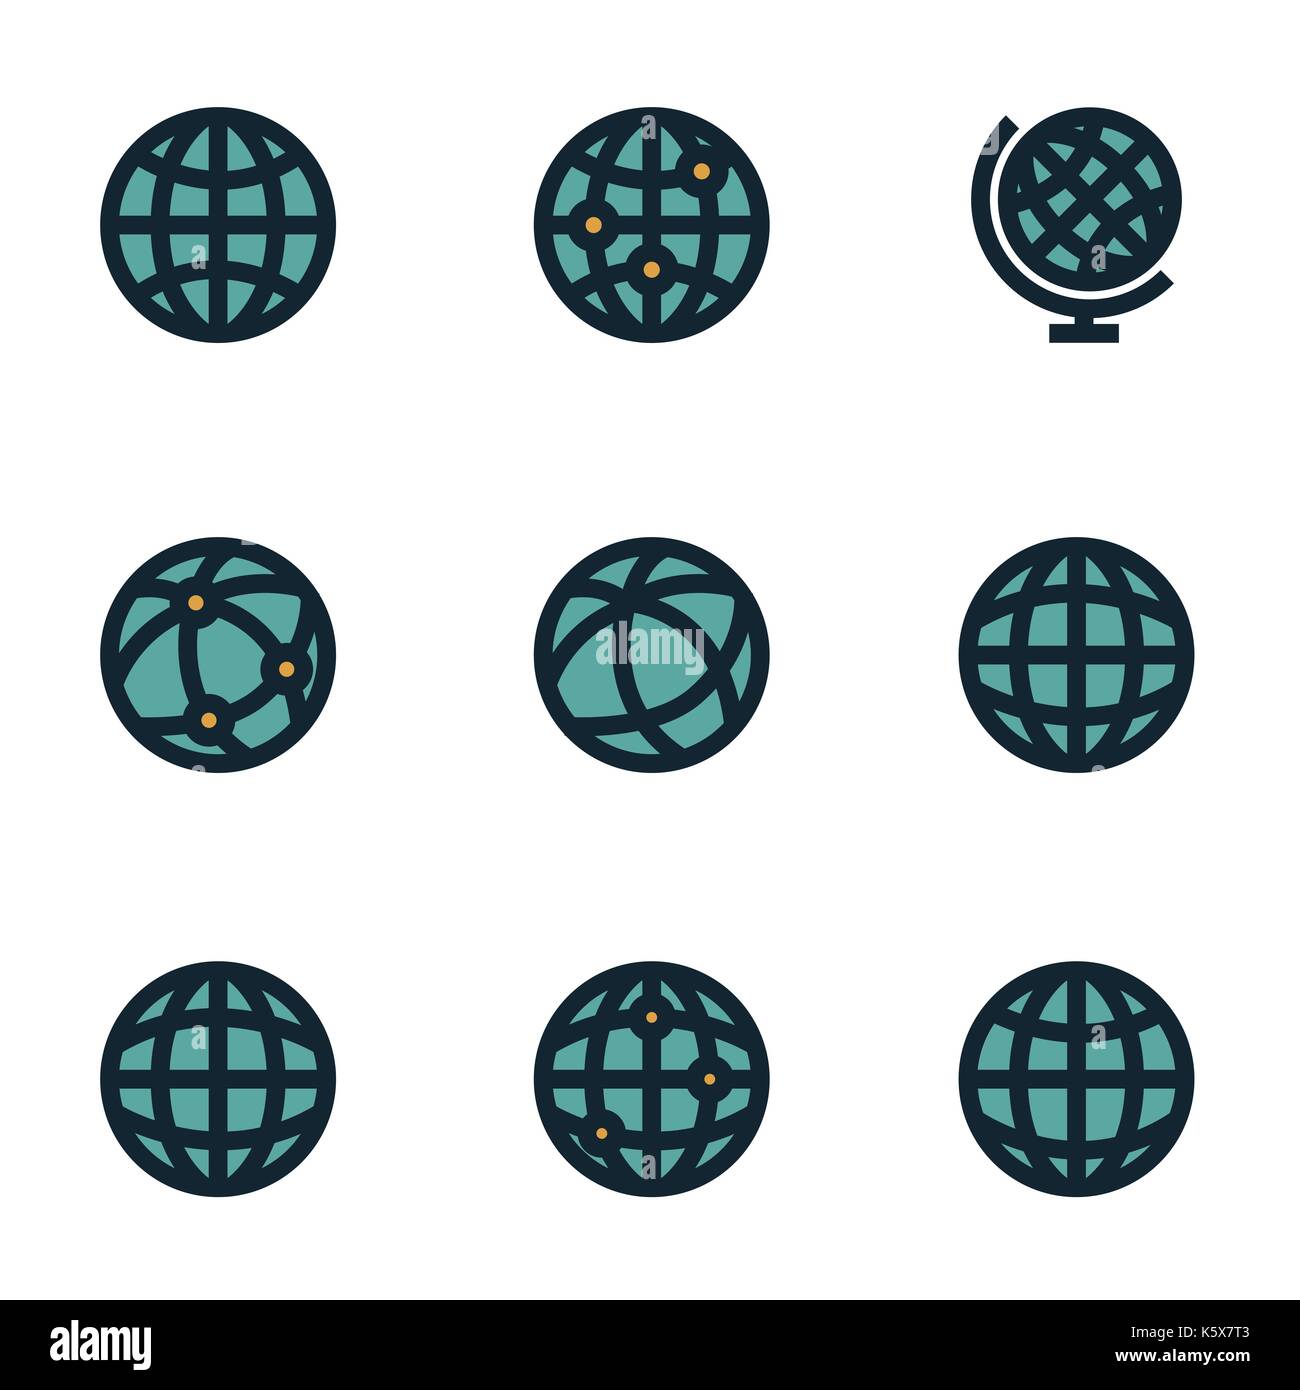 Vektor-flache Welt Karte Icons set auf weißem Hintergrund Stock Vektor